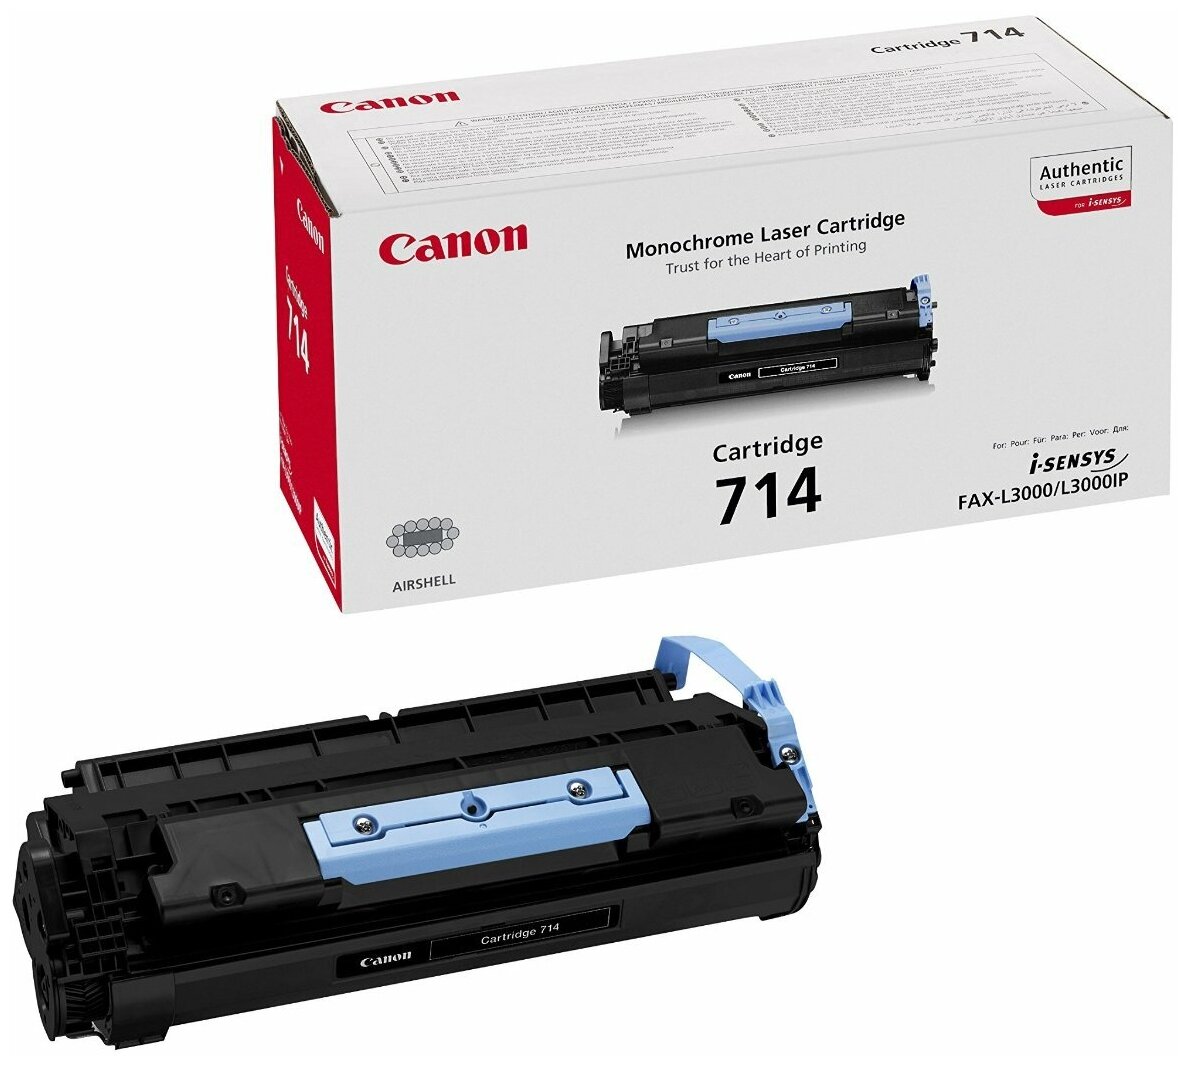 Картридж Canon L3000/3000IP, 4,5K, черный